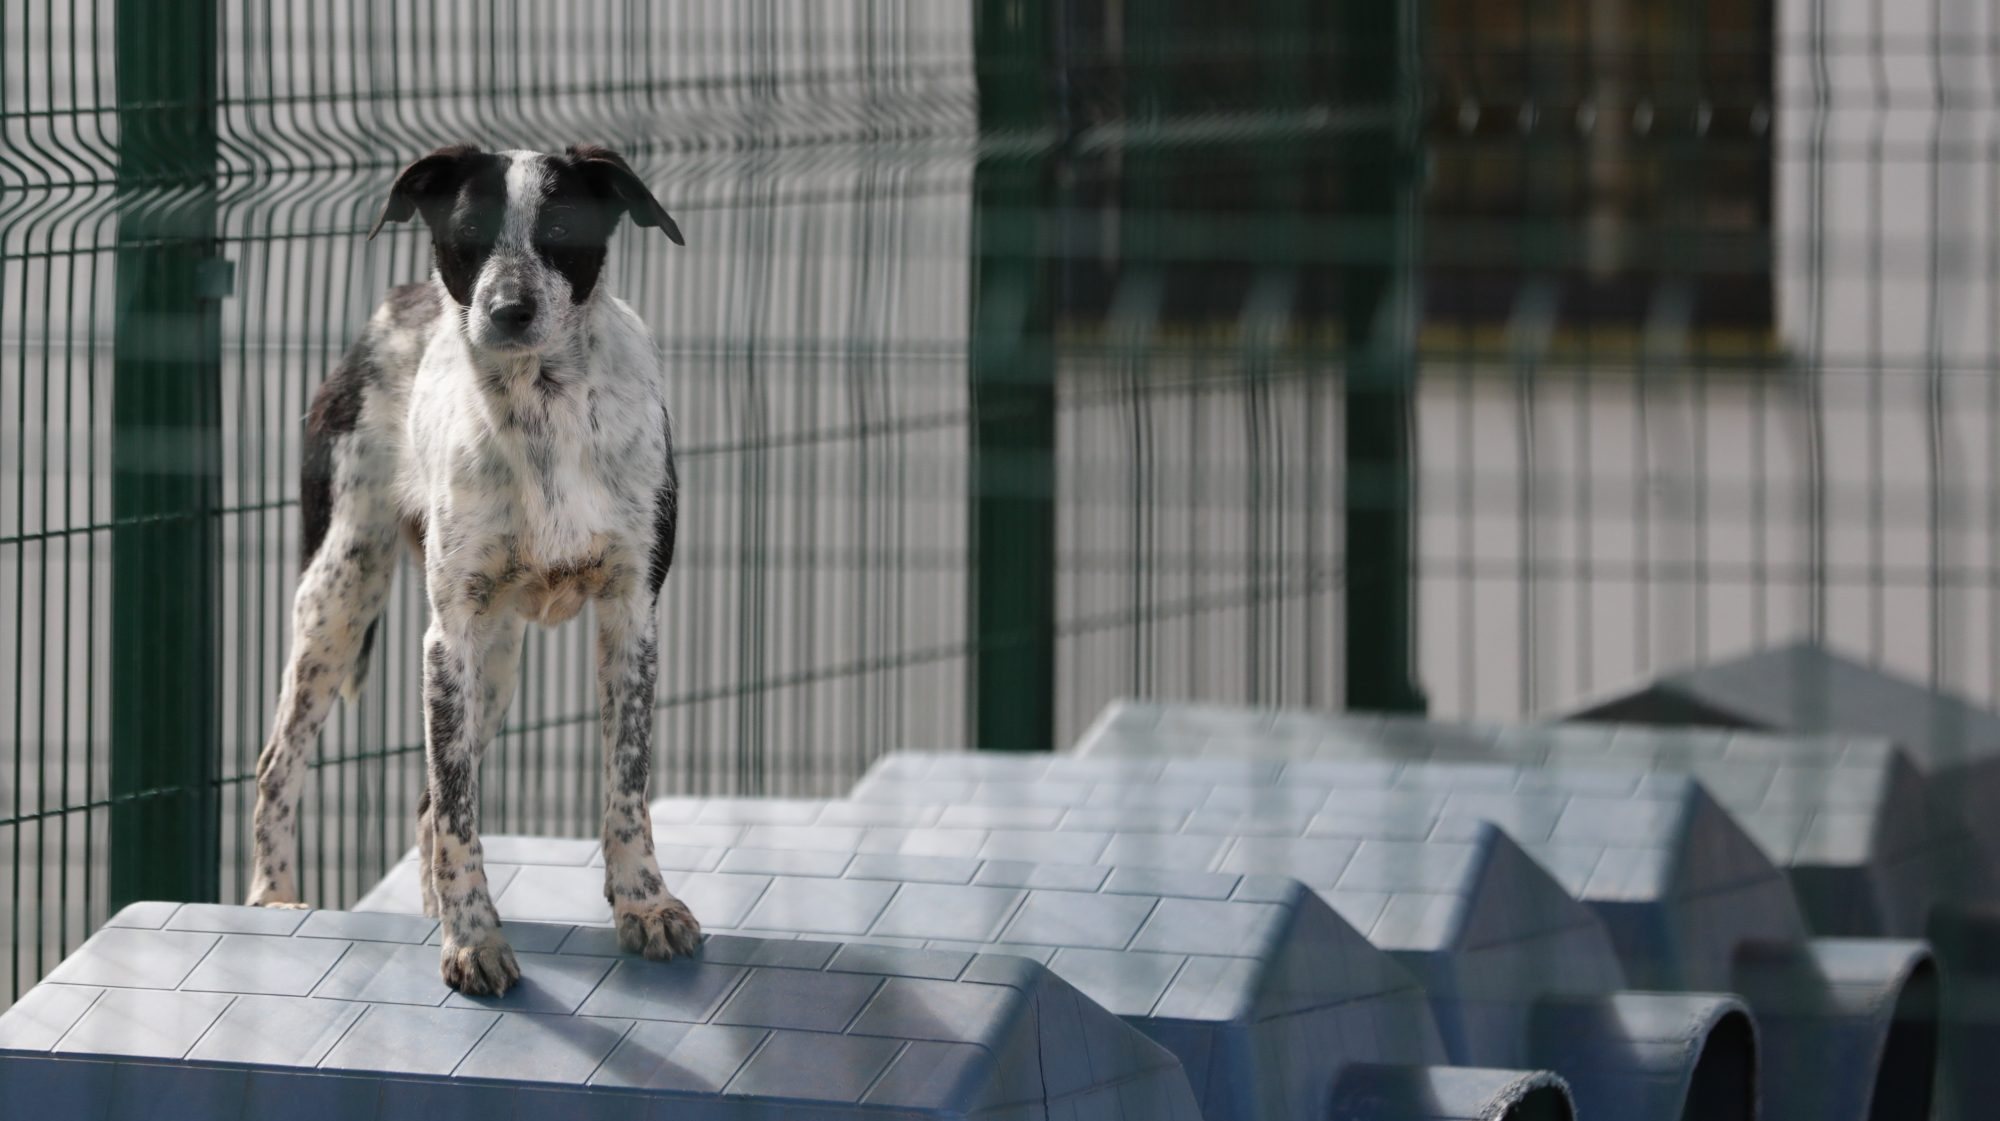 O animal com lesões está agora internado numa clínica veterinária e dois cães continuam desaparecidos